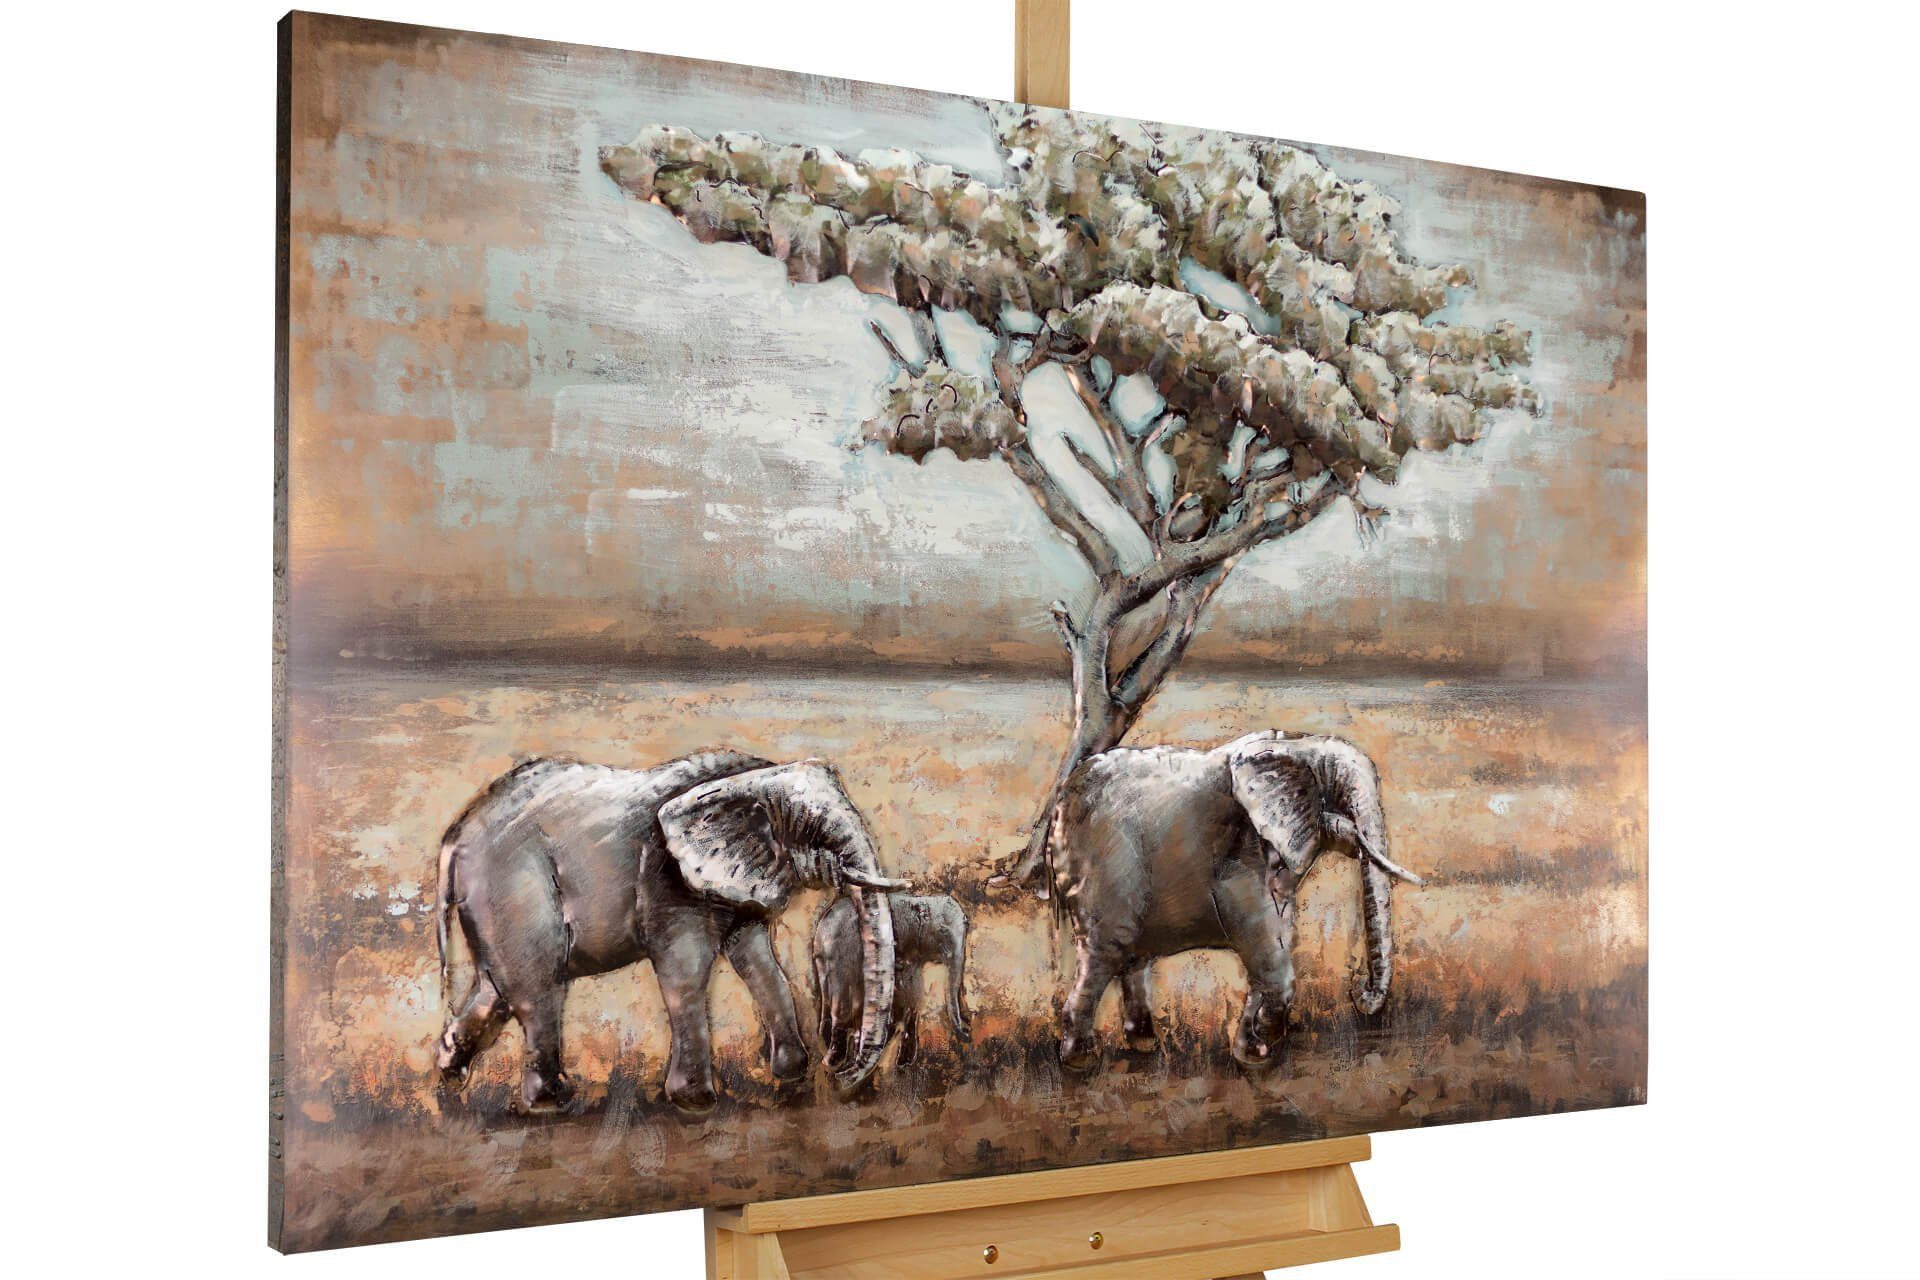 KUNSTLOFT Metallbild Elefanten in Afrika 120x80 cm, handgefertiges Wandrelief 3D